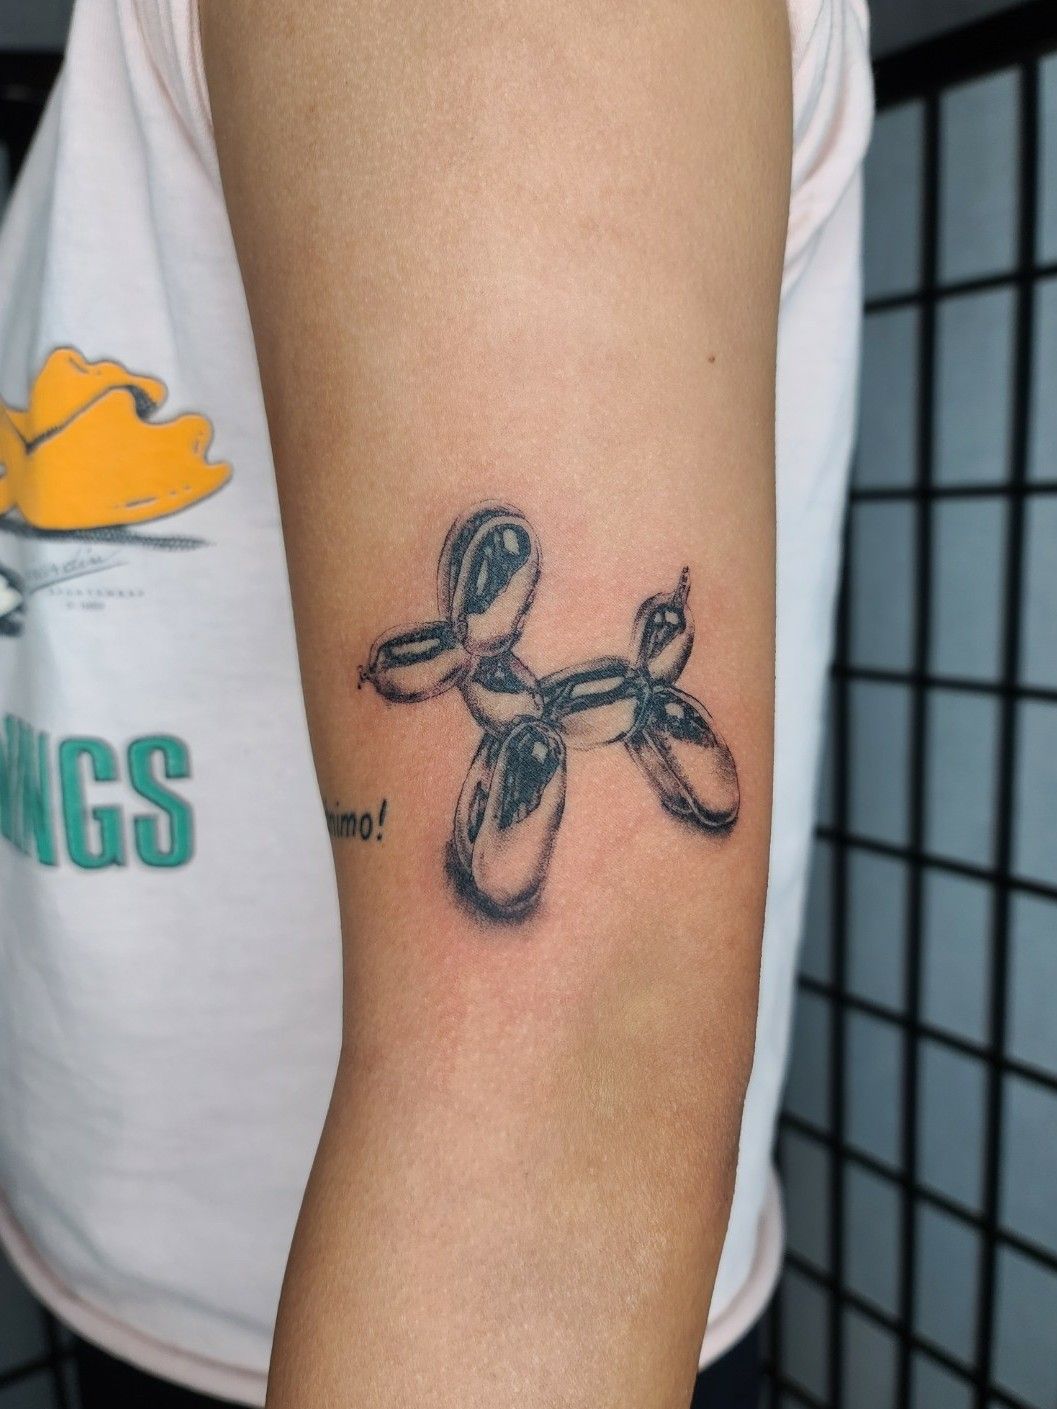 Tattoo tagged with art small jonboy micro black tiny blue jeff  koons little wrist minimalist  inkedappcom